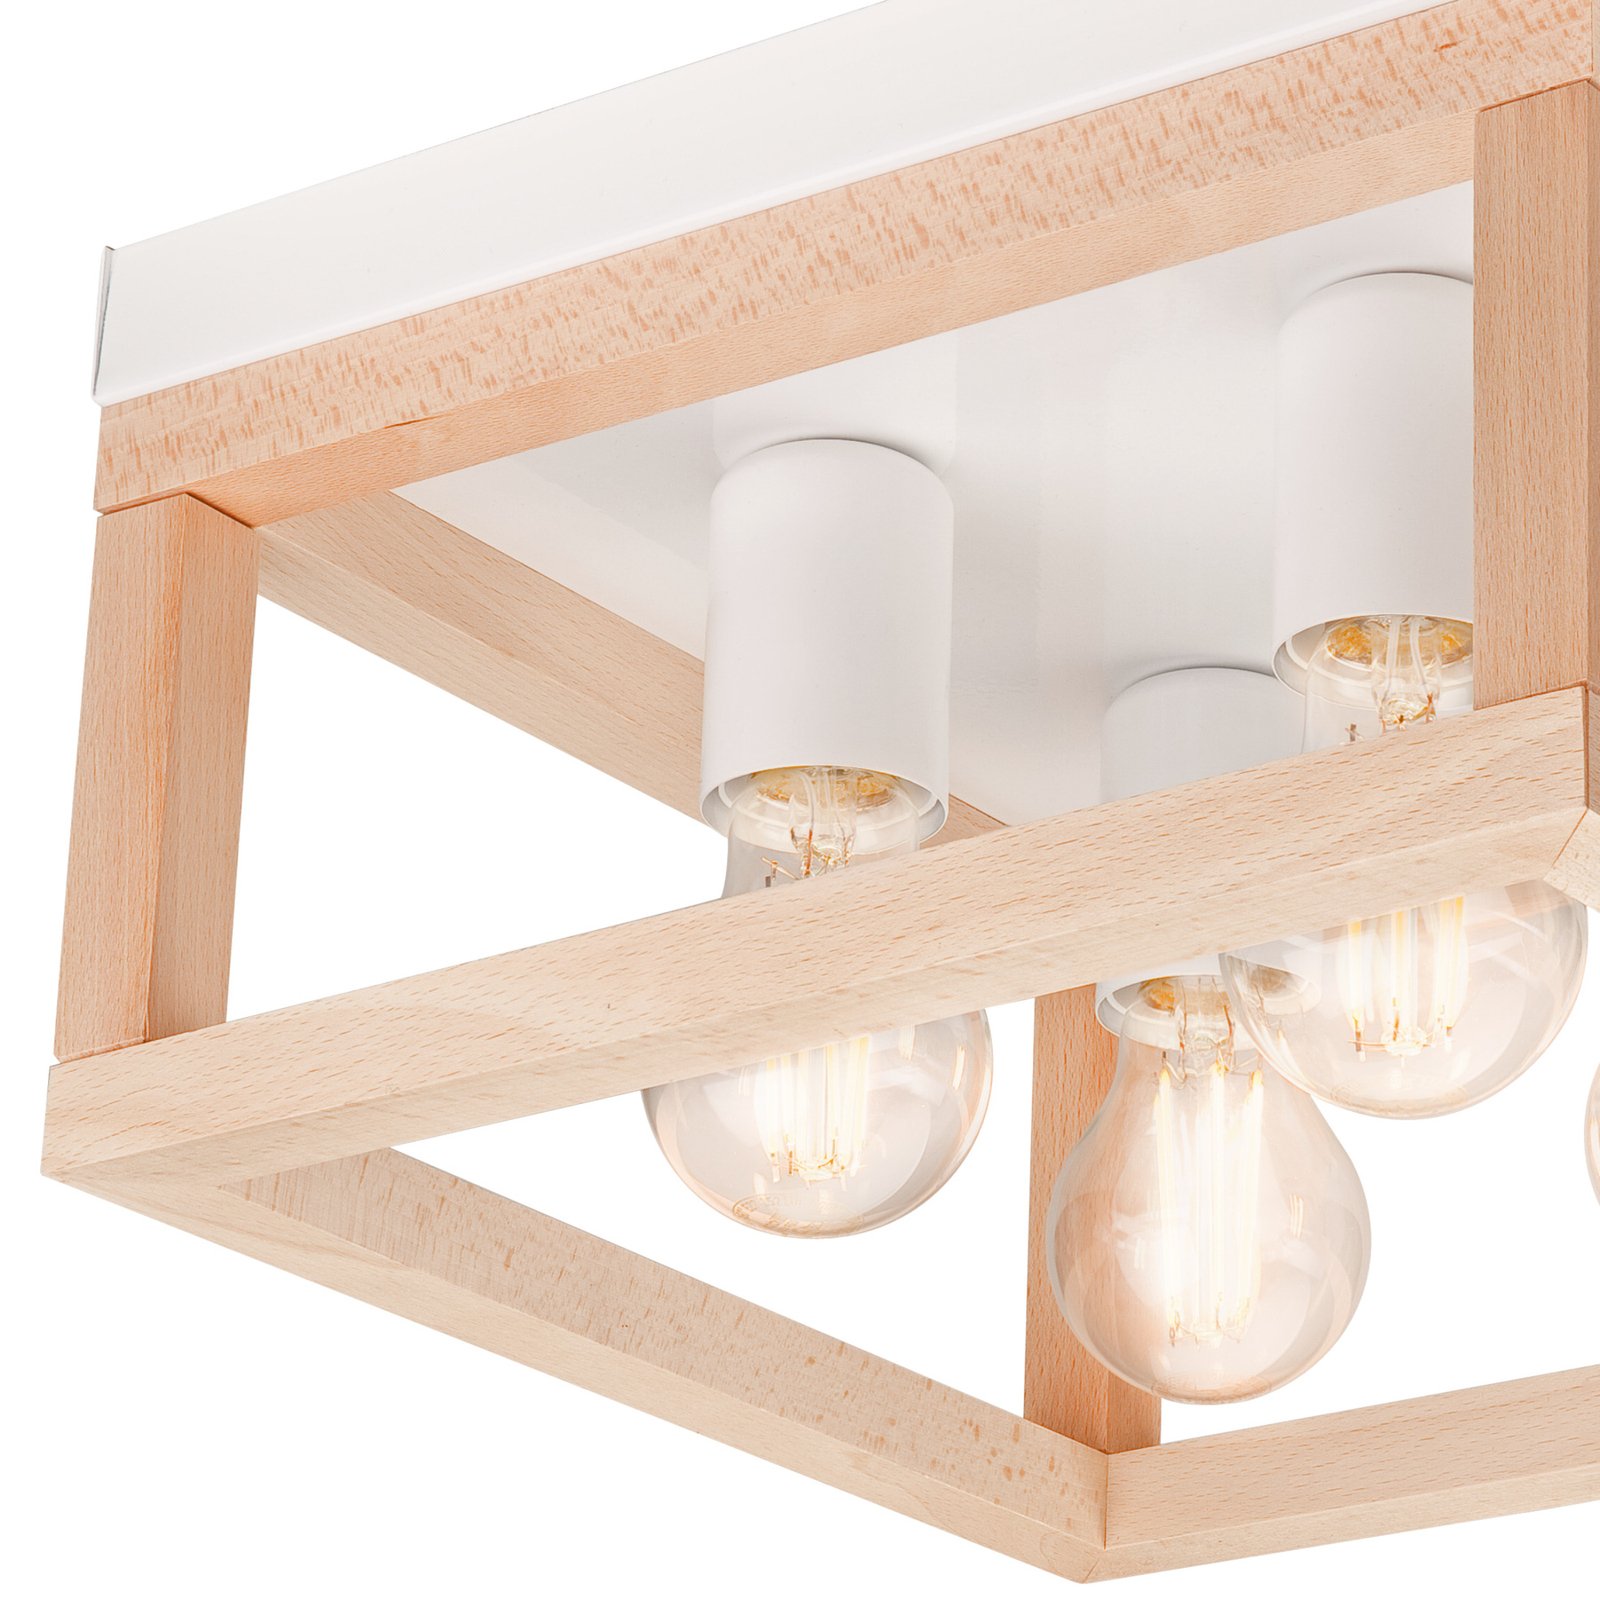 Envostar Phelan ceiling light 4-bulb wood/white